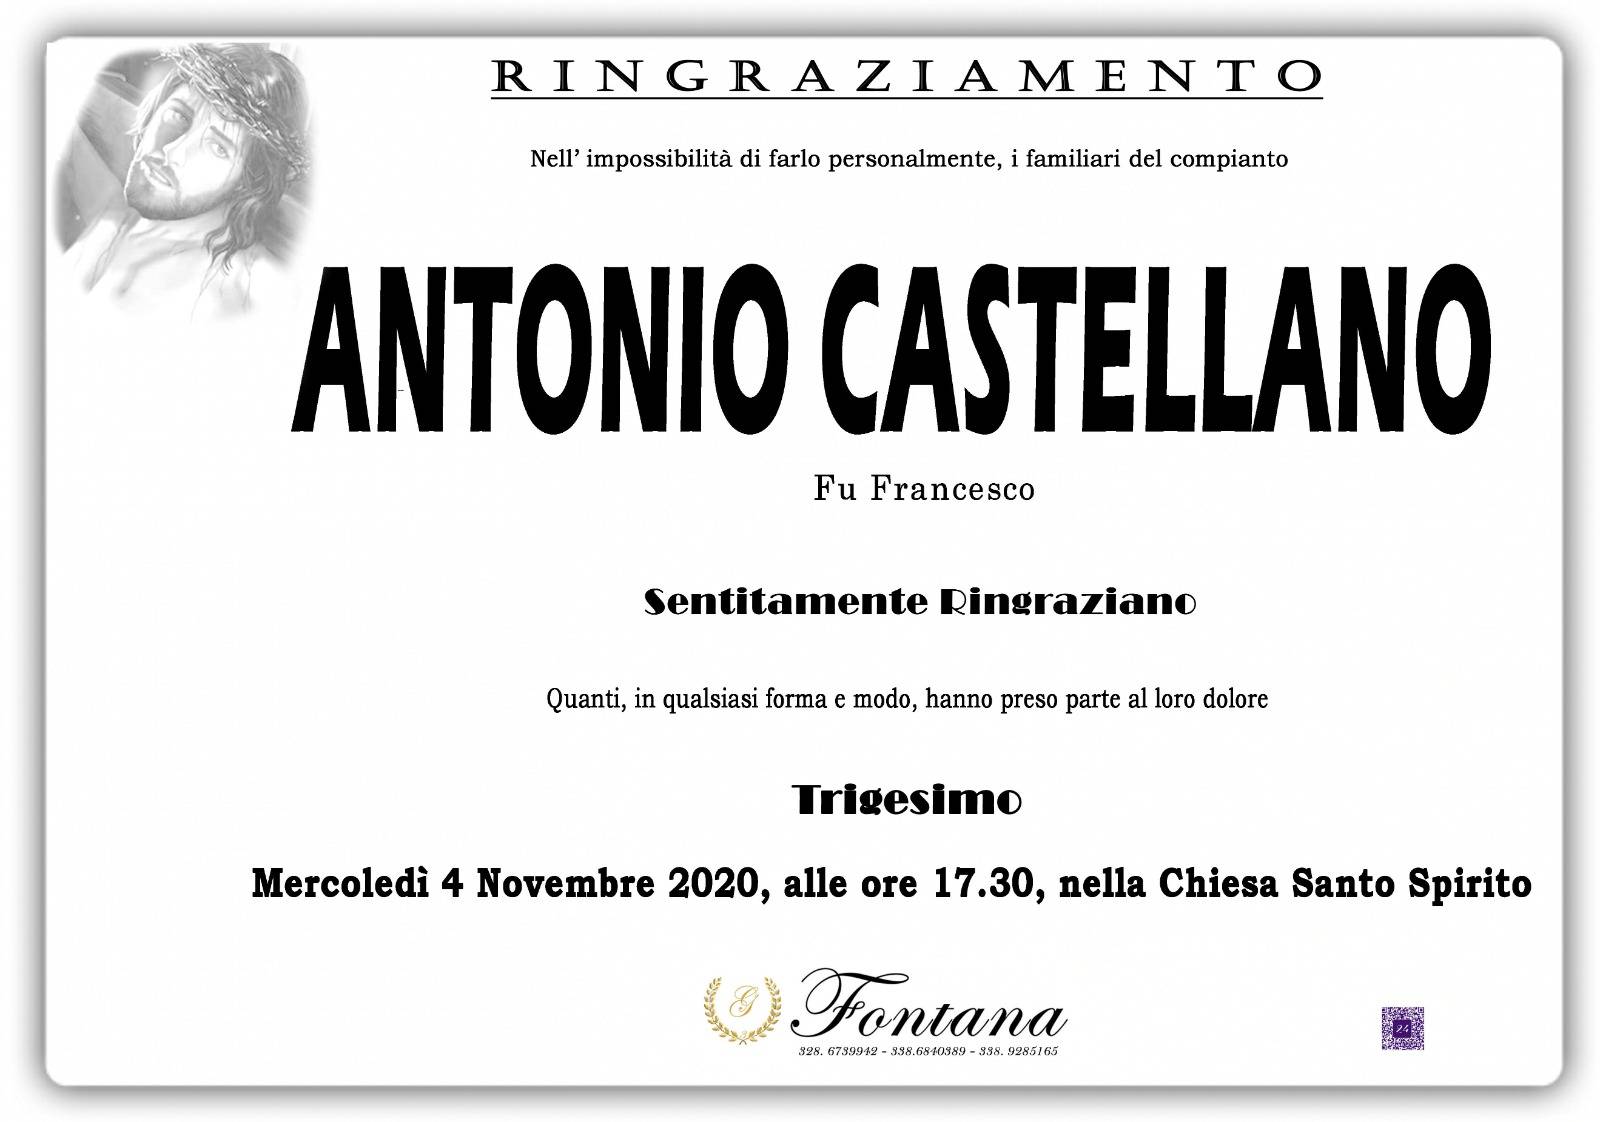 Antonio Castellano